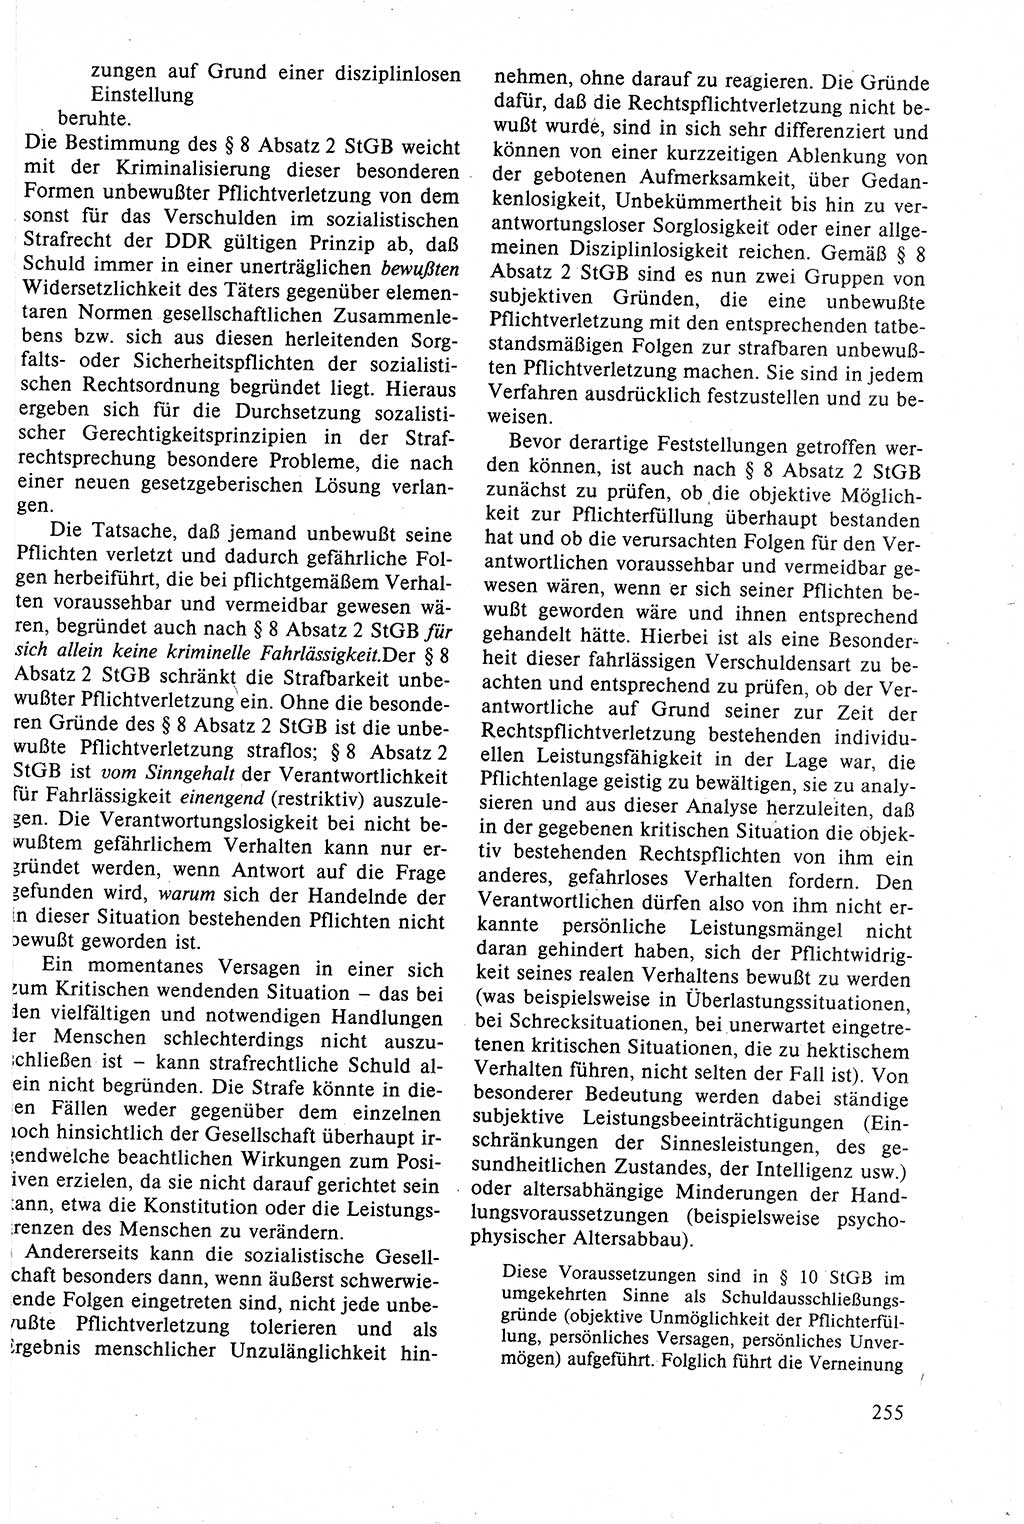 Strafrecht der DDR (Deutsche Demokratische Republik), Lehrbuch 1988, Seite 255 (Strafr. DDR Lb. 1988, S. 255)